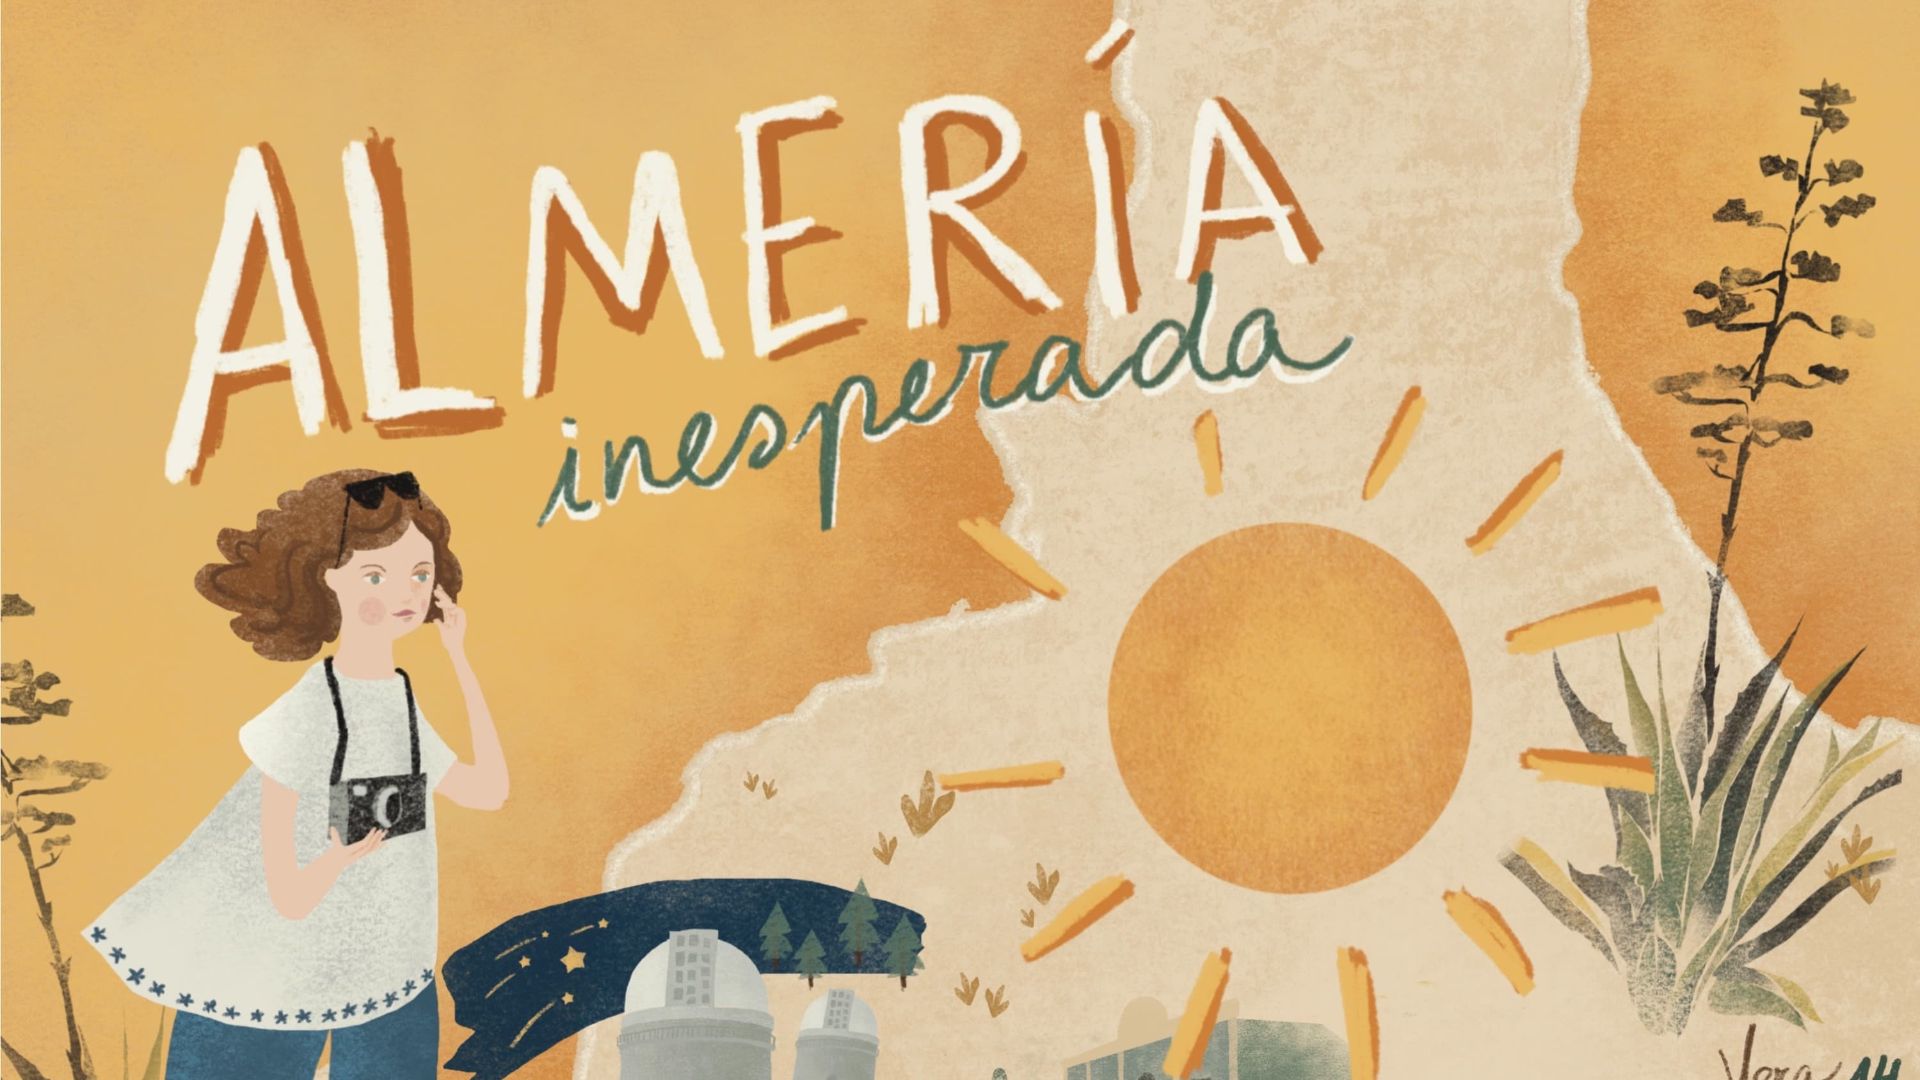 Almería inesperada: del Mediterráneo al espacio exterior